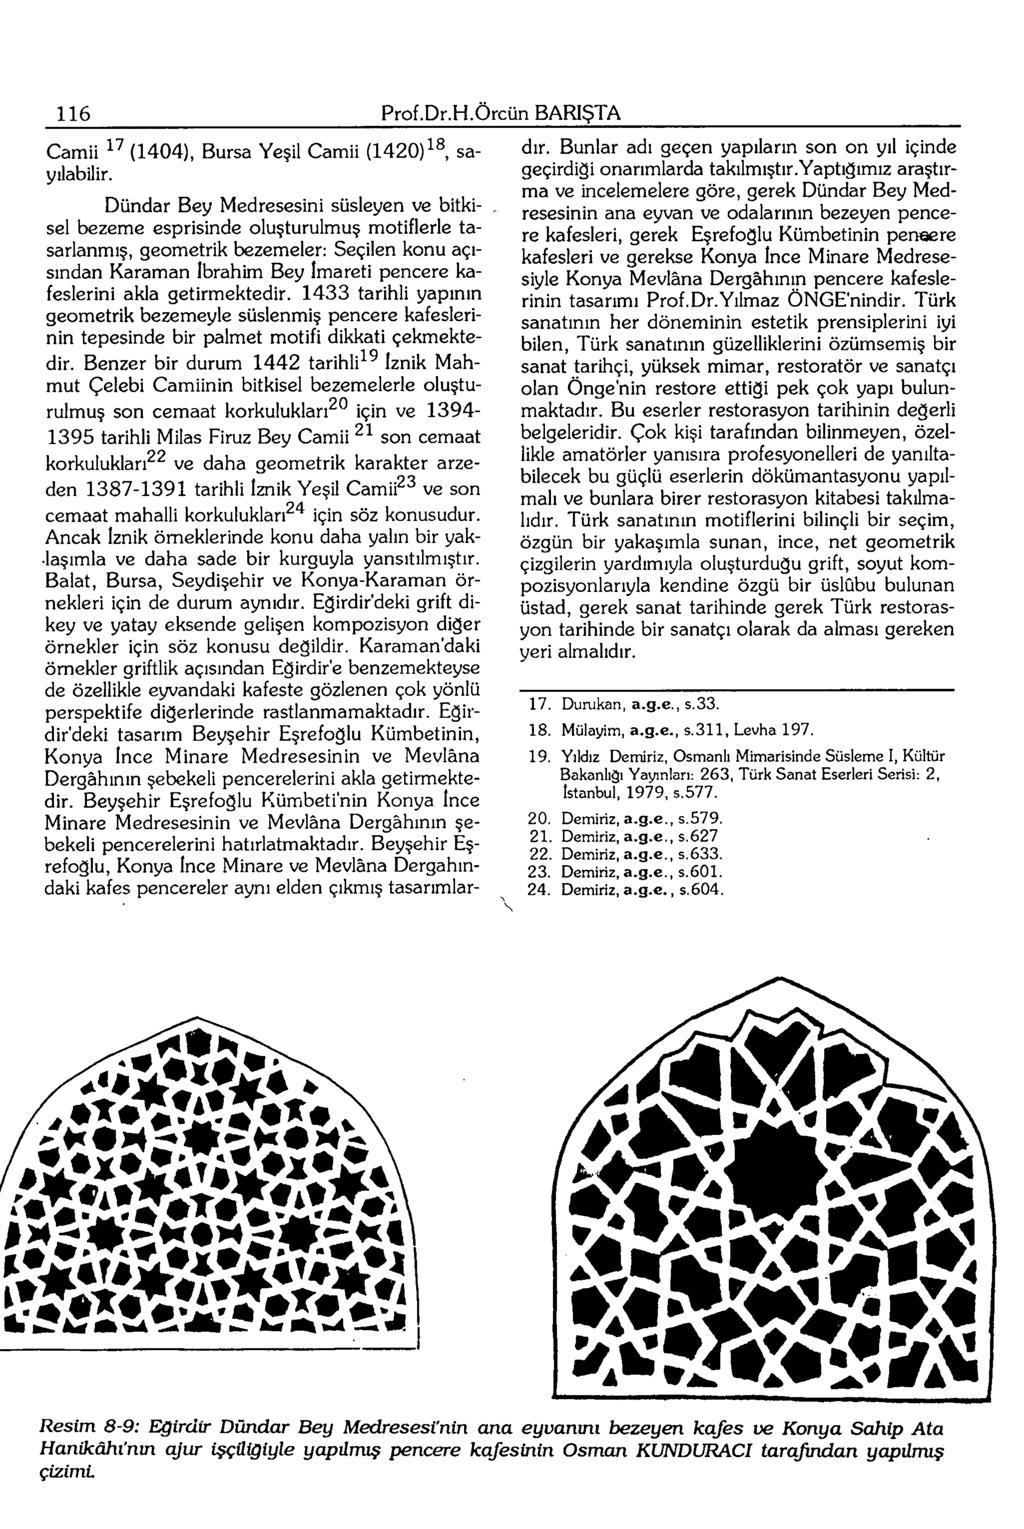 116 Prof.Dr.H.Örcün BARIŞTA Camii ^' (1404), Bursa Yeşil Camii (1420)^ sayılabilir.